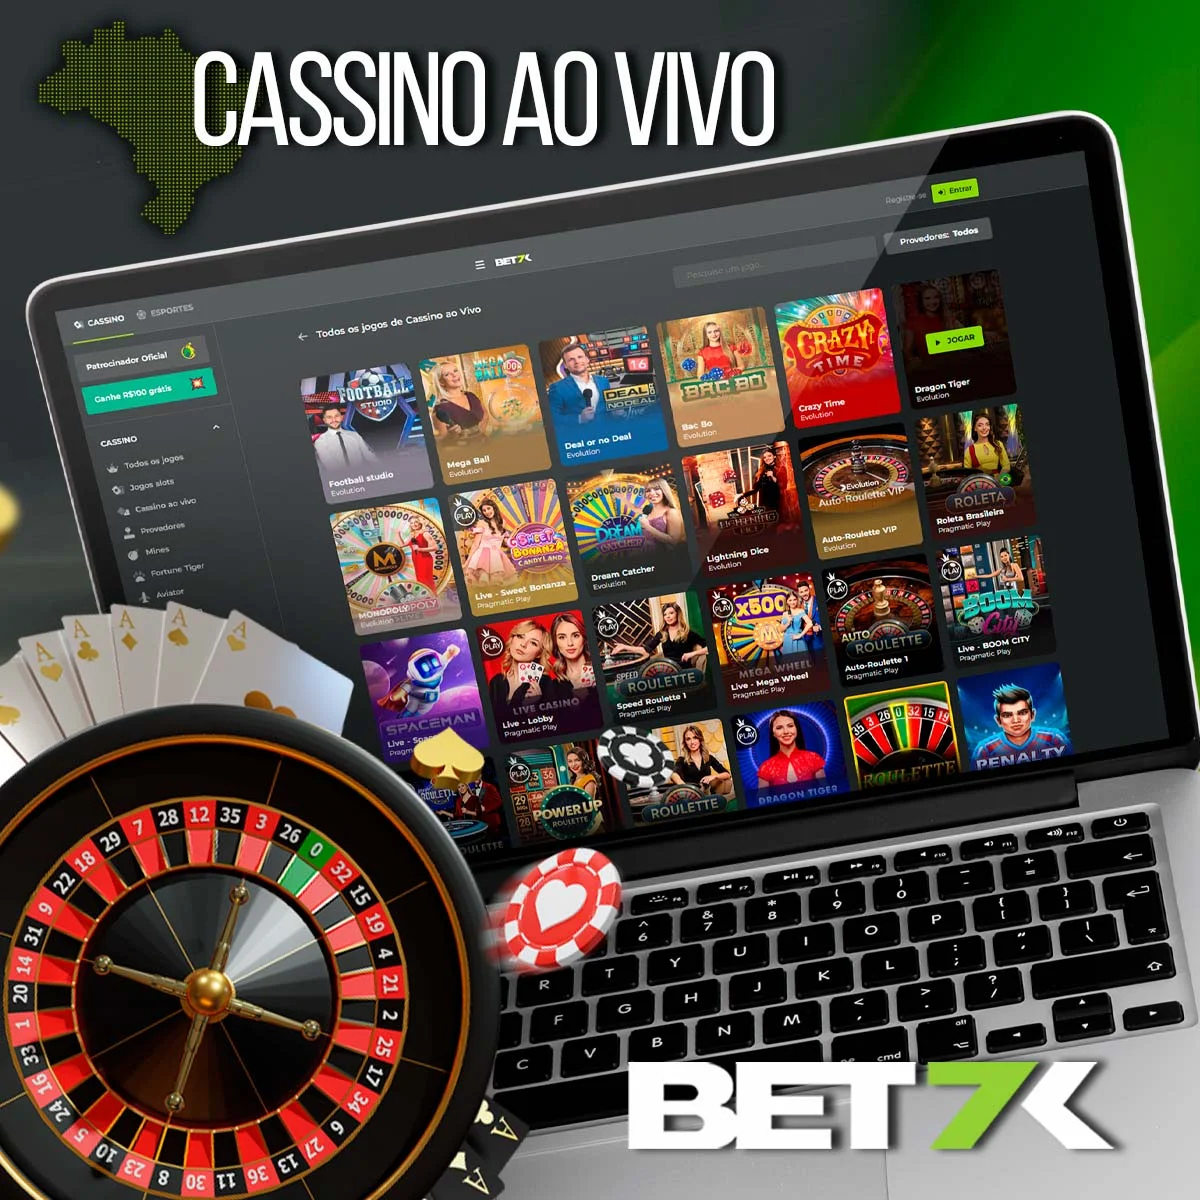 O popular jogo online no Cassino Bet7k no Brasil